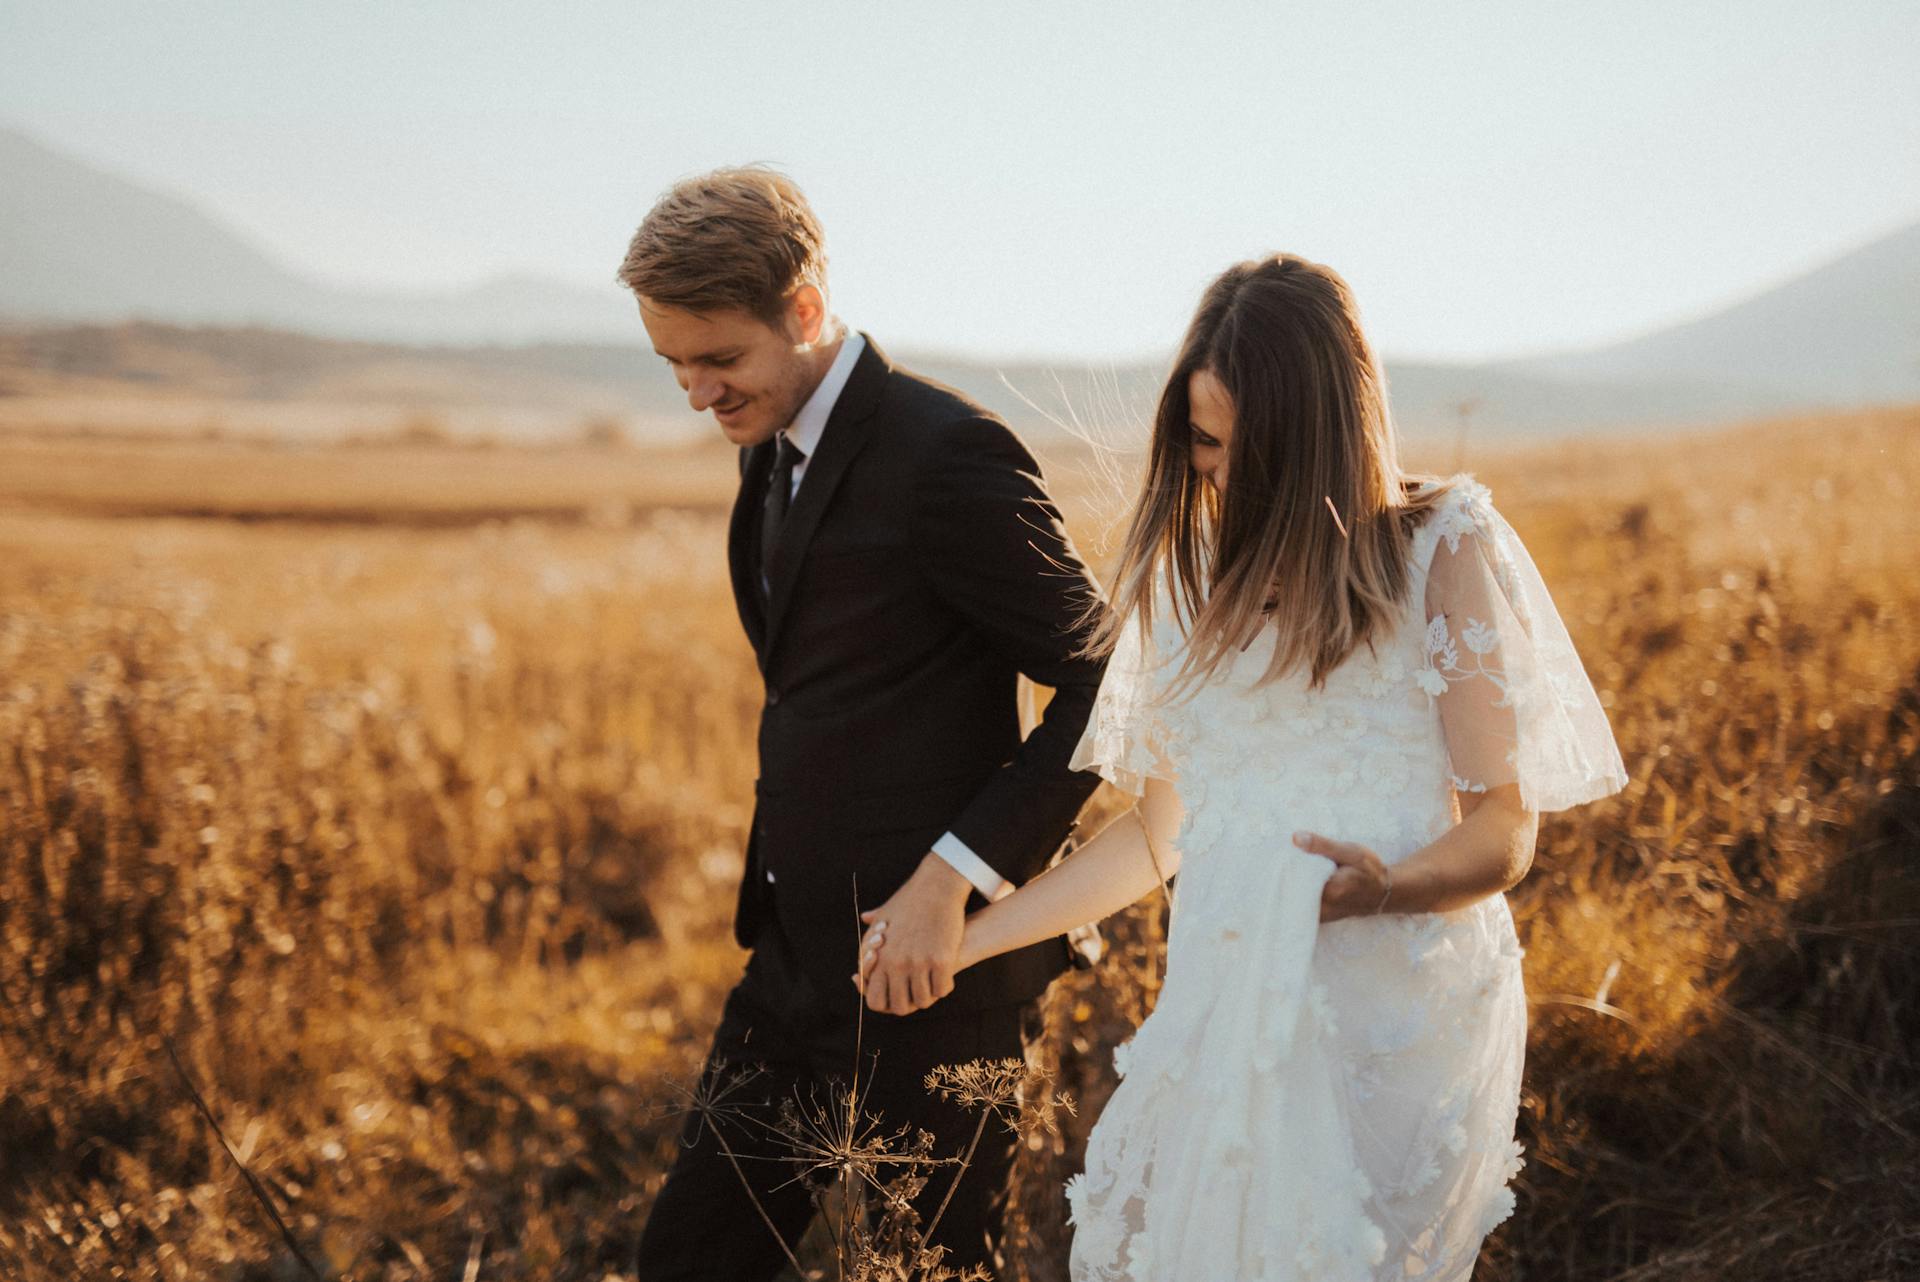 Une mariée et un marié se tenant la main dans un champ | Source : Pexels